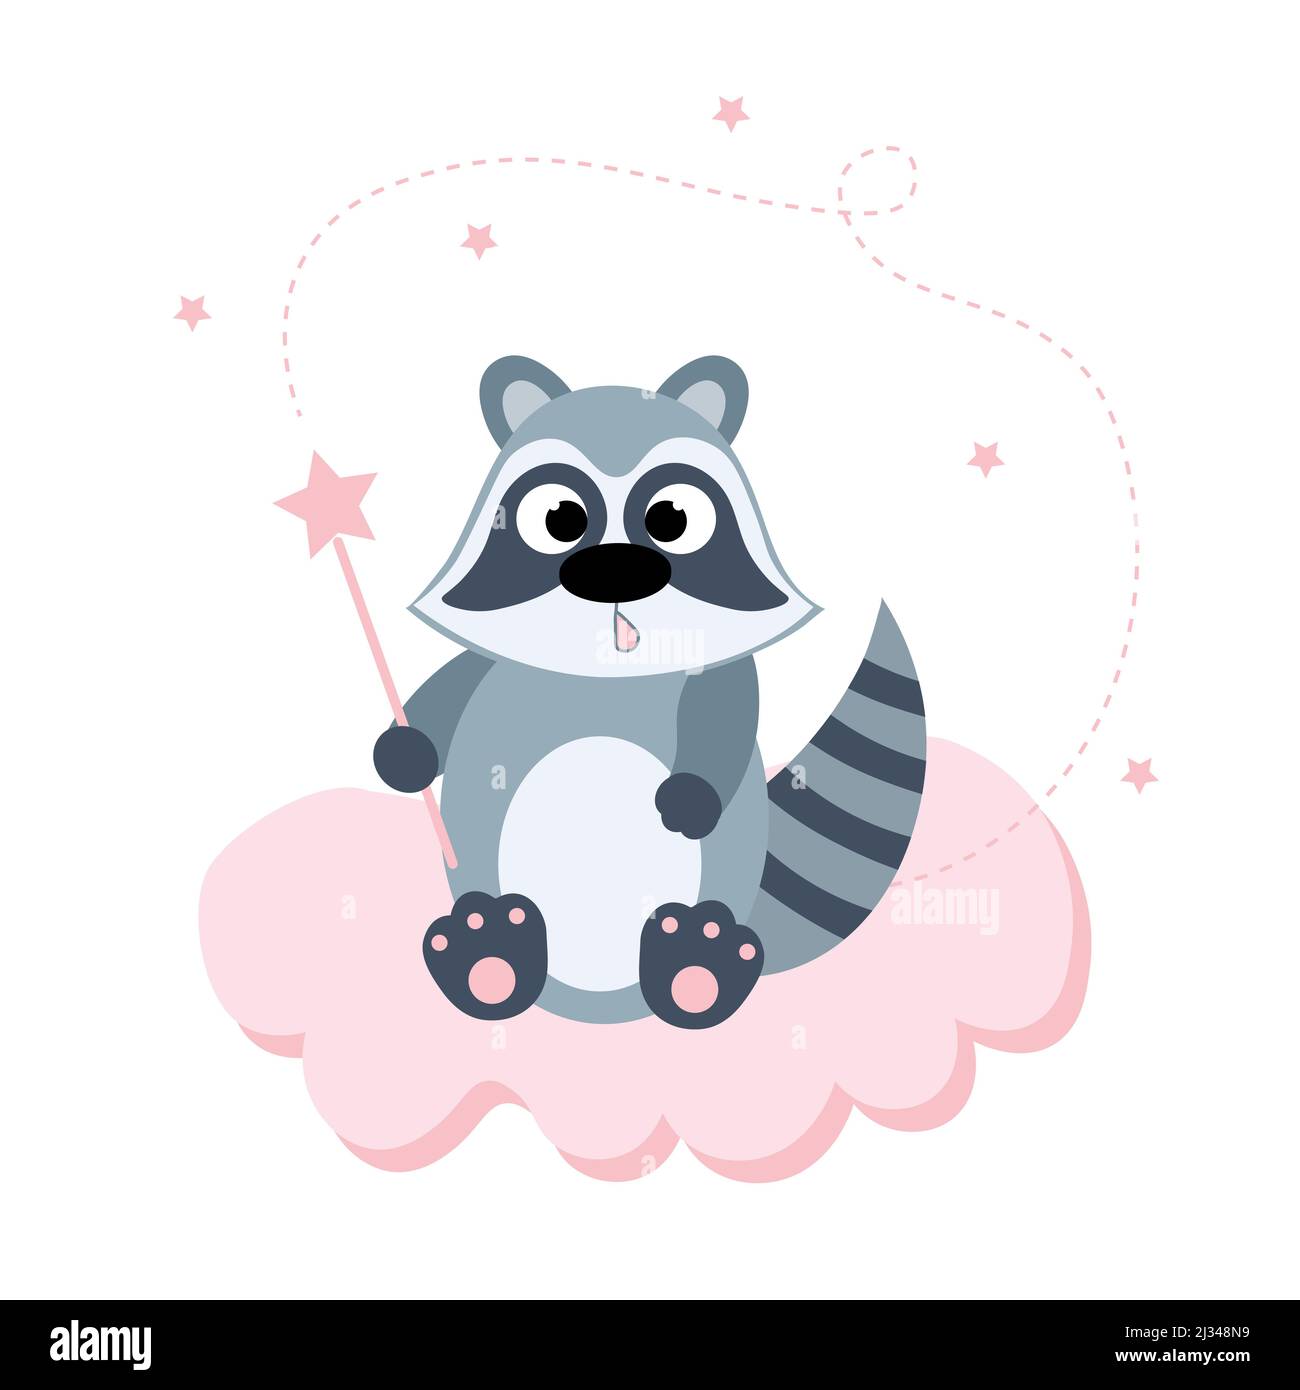 Un carino raccoon con una bacchetta magica si siede su una nuvola rosa. Cartolina o banner per bambini. Illustrazione piatta. Illustrazione Vettoriale